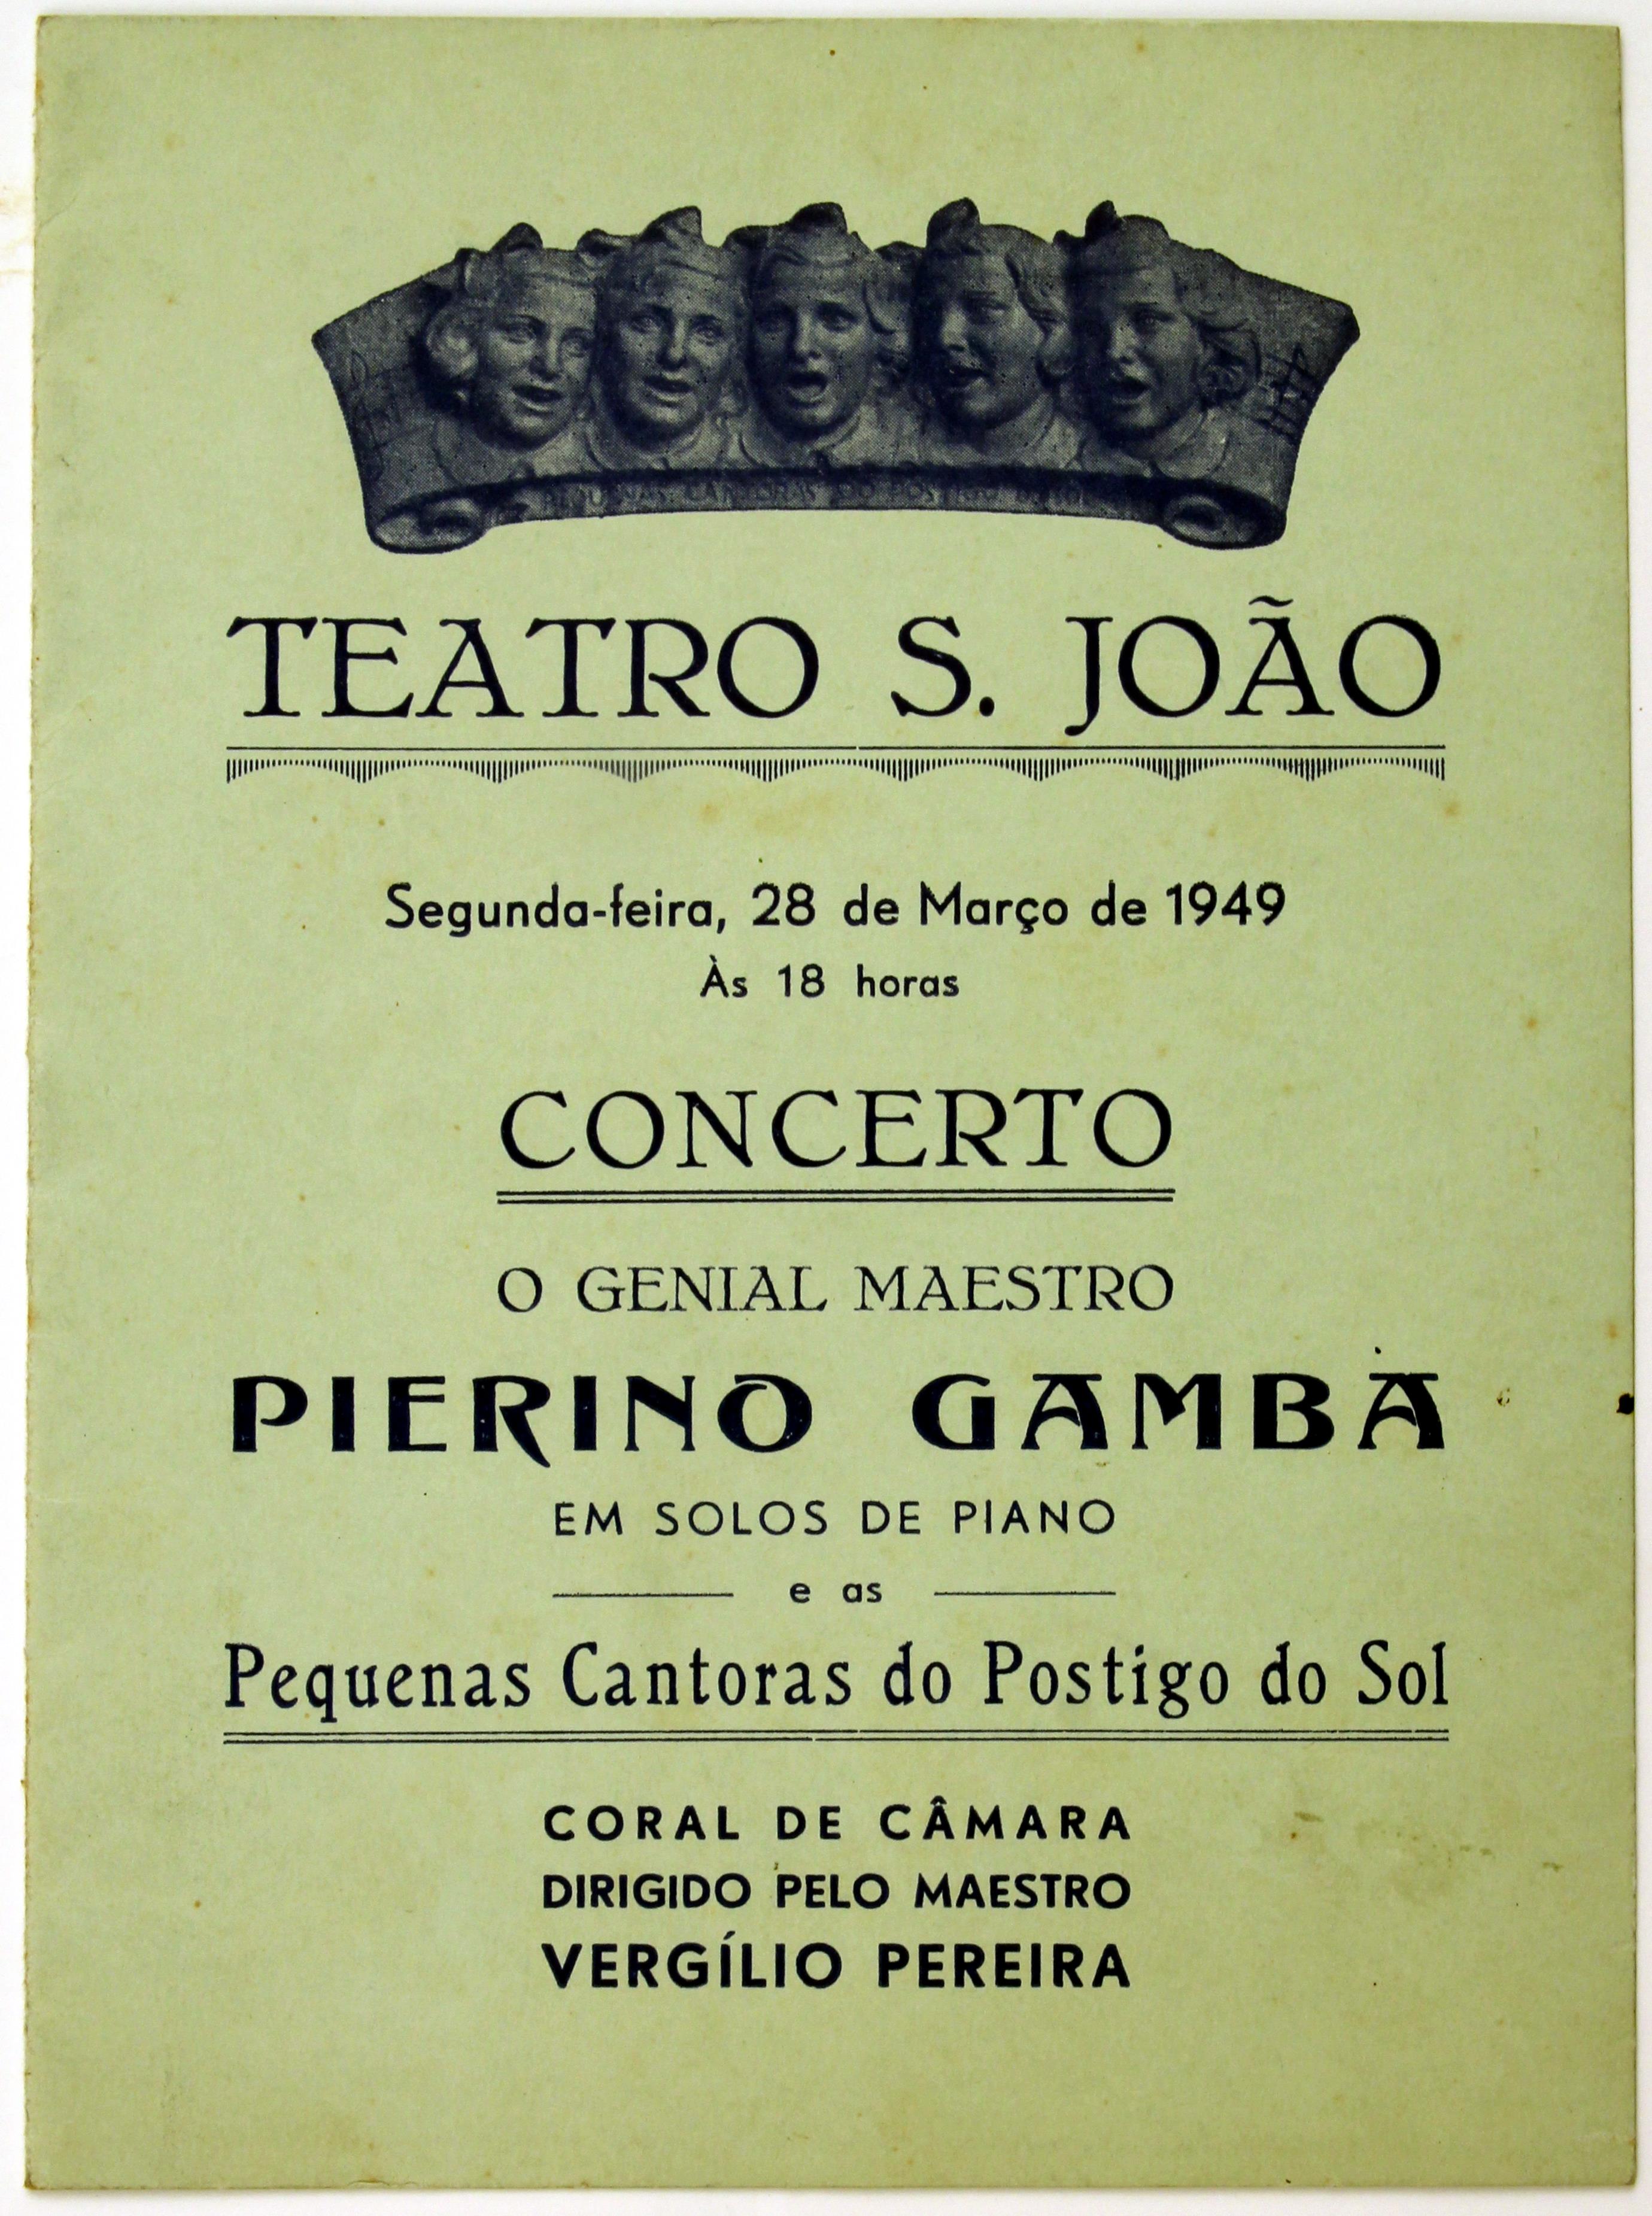 Cruz Caldas e o Orfeão do Porto : Teatro S. João : concerto : o genial maestro Pierino Gamba em solos de piano e as Pequenas Cantoras do Postigo do Sol : programa